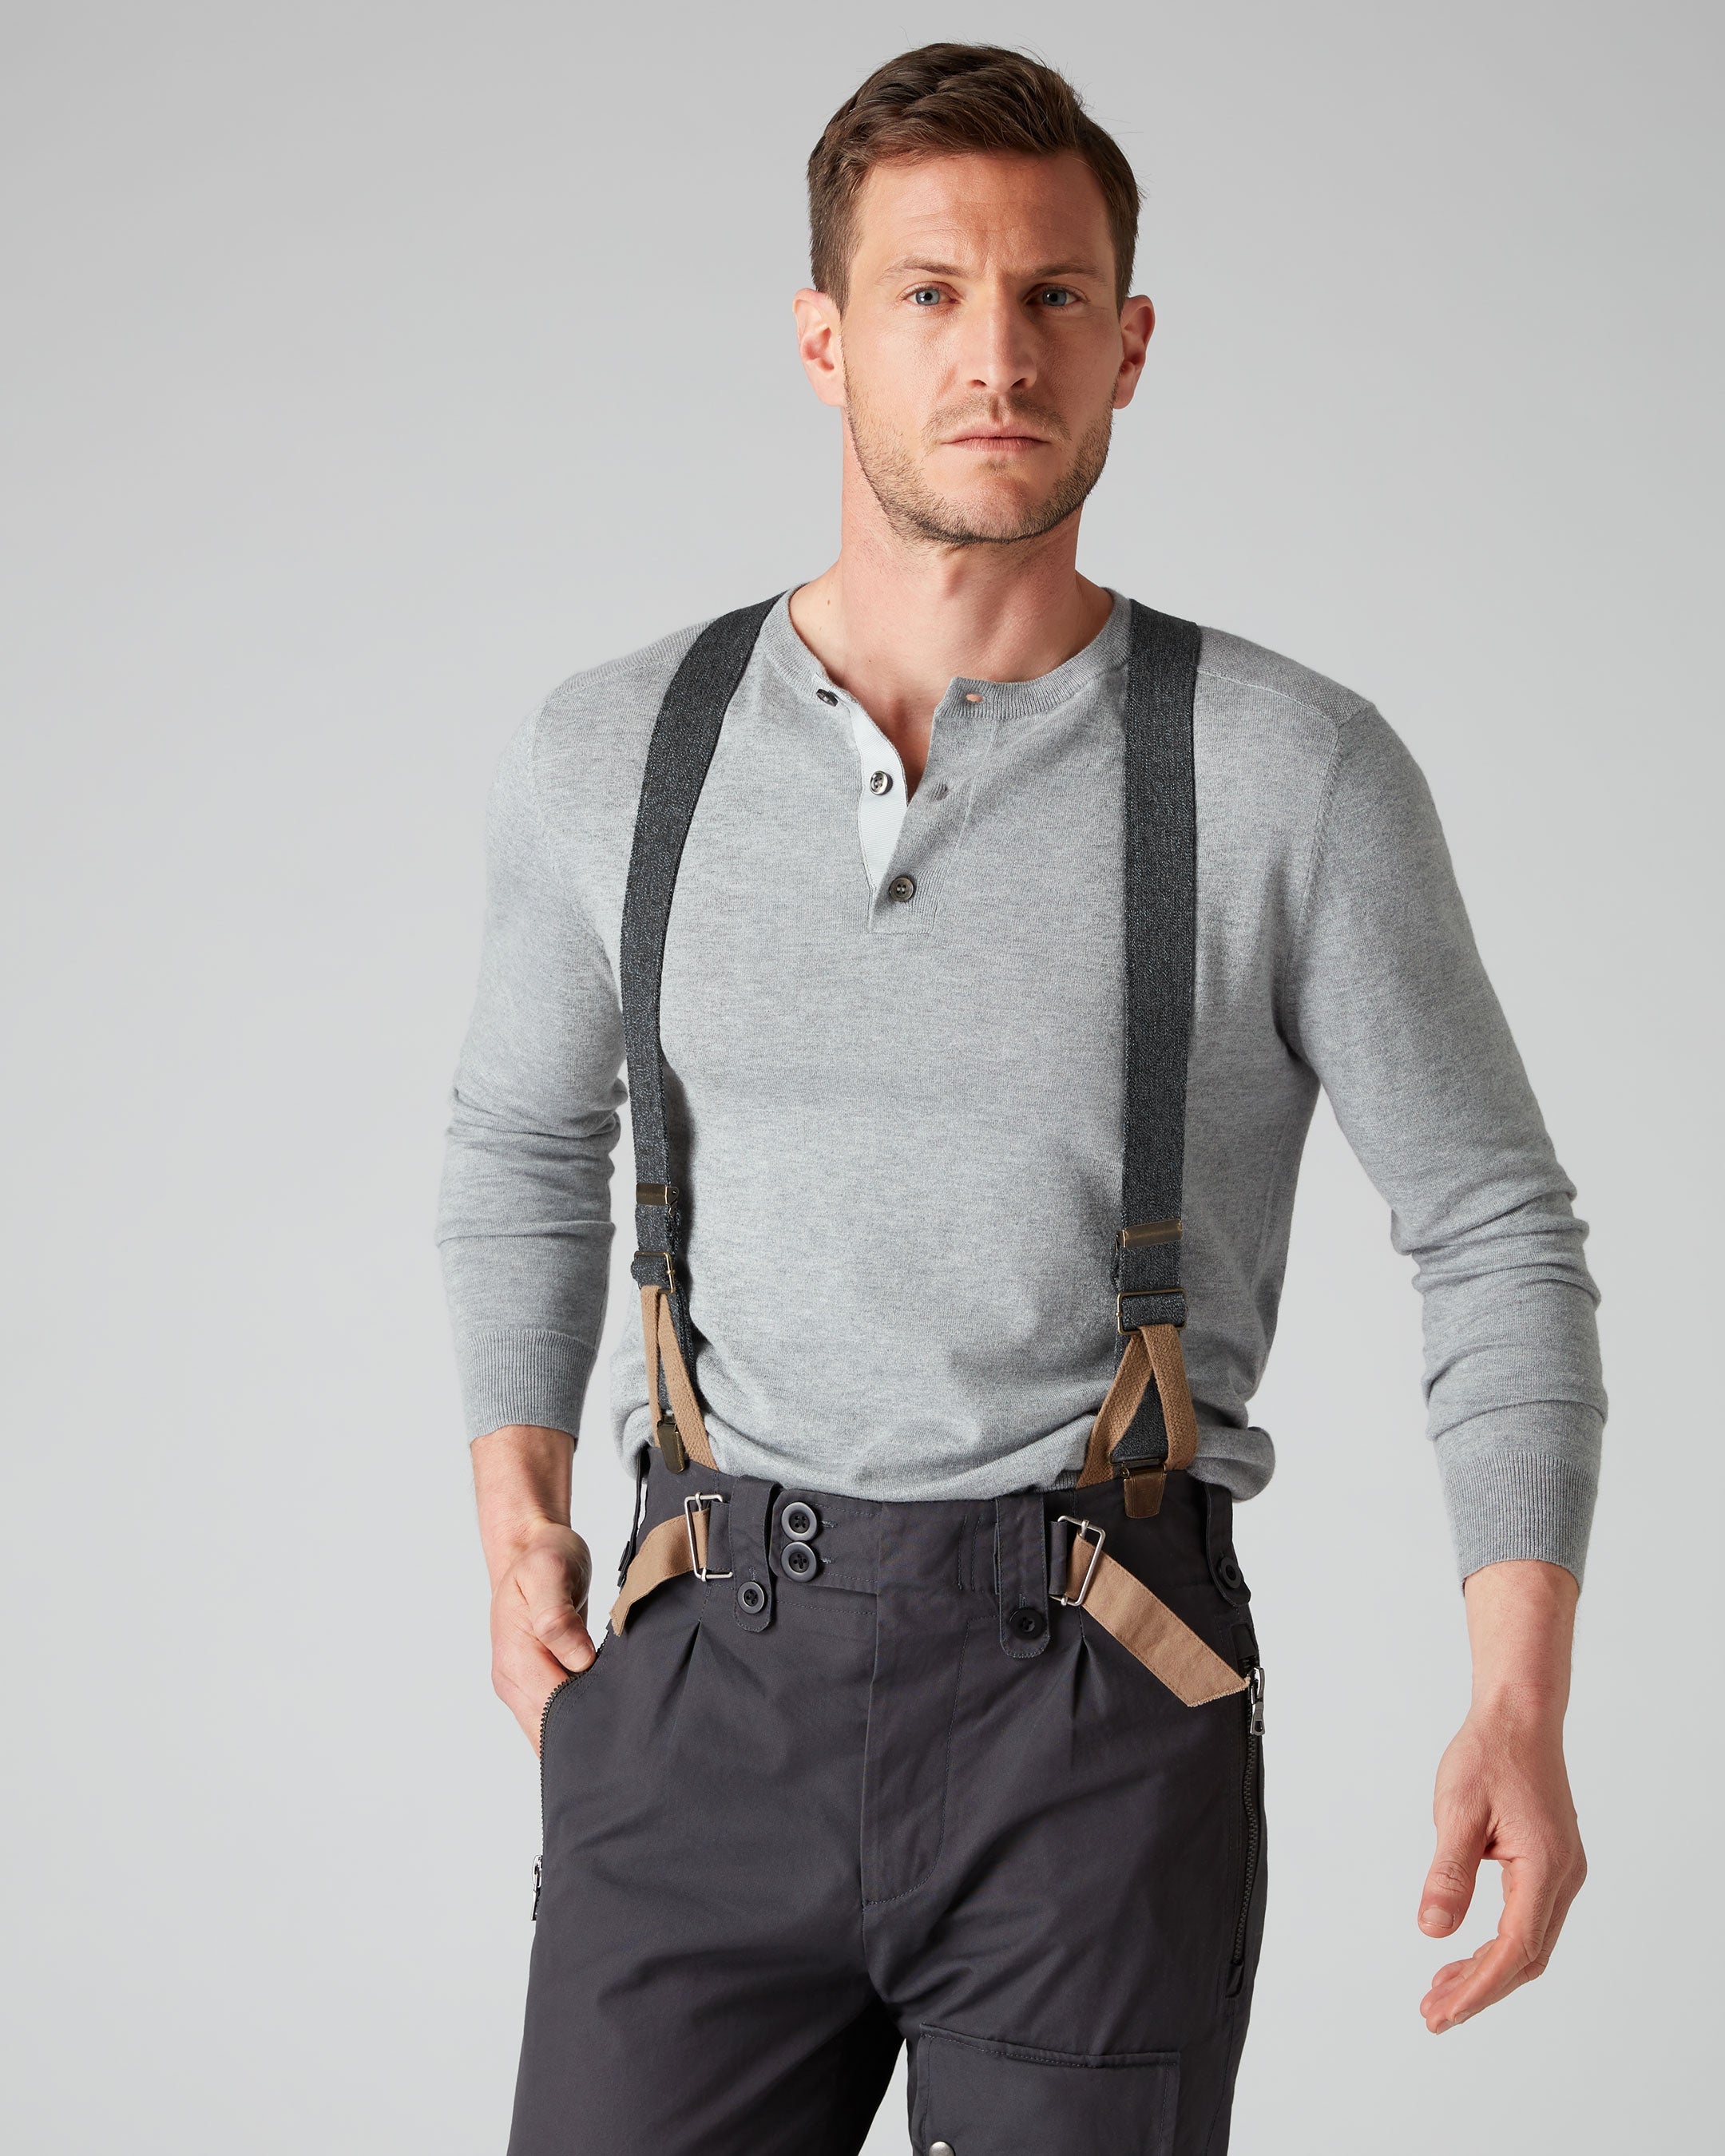 ZULYSTO Suspenders for Men Under Clothing Hikers Hidden Suspenders for Men  Tux Thin Elastic Grey Suspenders Women 1'' Wide - Yahoo Shopping